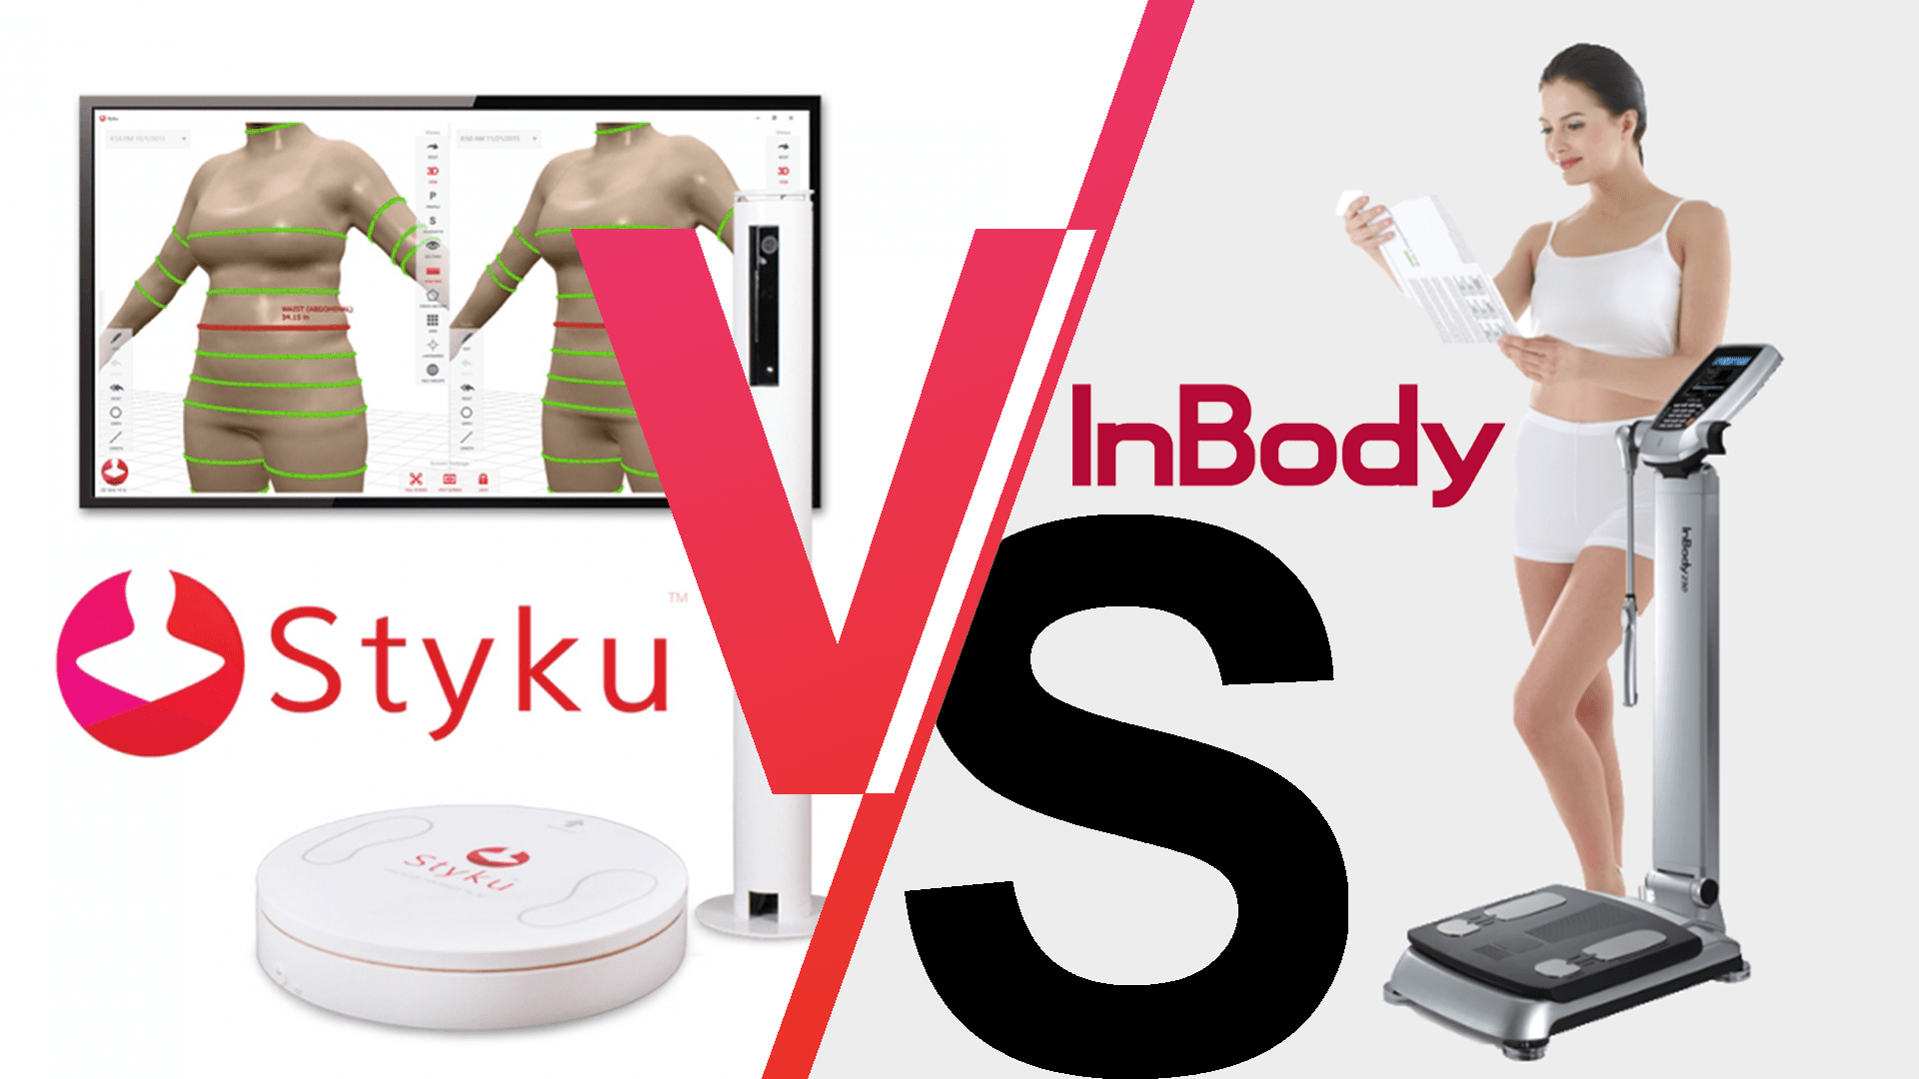 Styku vs. InBody: A 3D Body Scanner Comparison